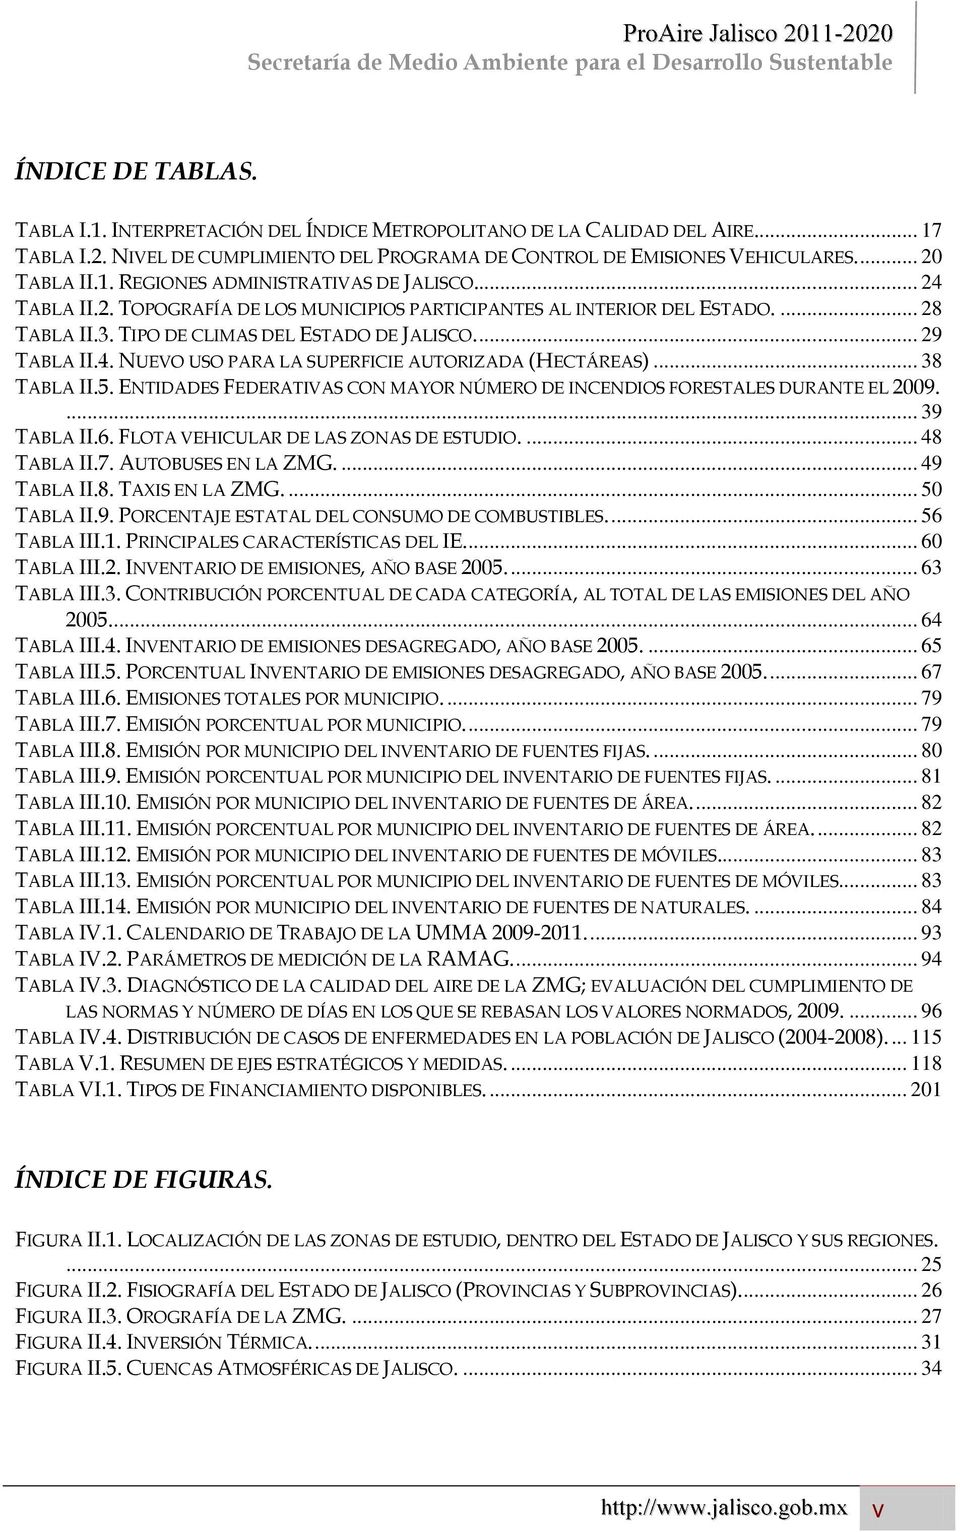 .. 38 TABLA II.5. ENTIDADES FEDERATIVAS CON MAYOR NÚMERO DE INCENDIOS FORESTALES DURANTE EL 2009.... 39 TABLA II.6. FLOTA VEHICULAR DE LAS ZONAS DE ESTUDIO.... 48 TABLA II.7. AUTOBUSES EN LA ZMG.